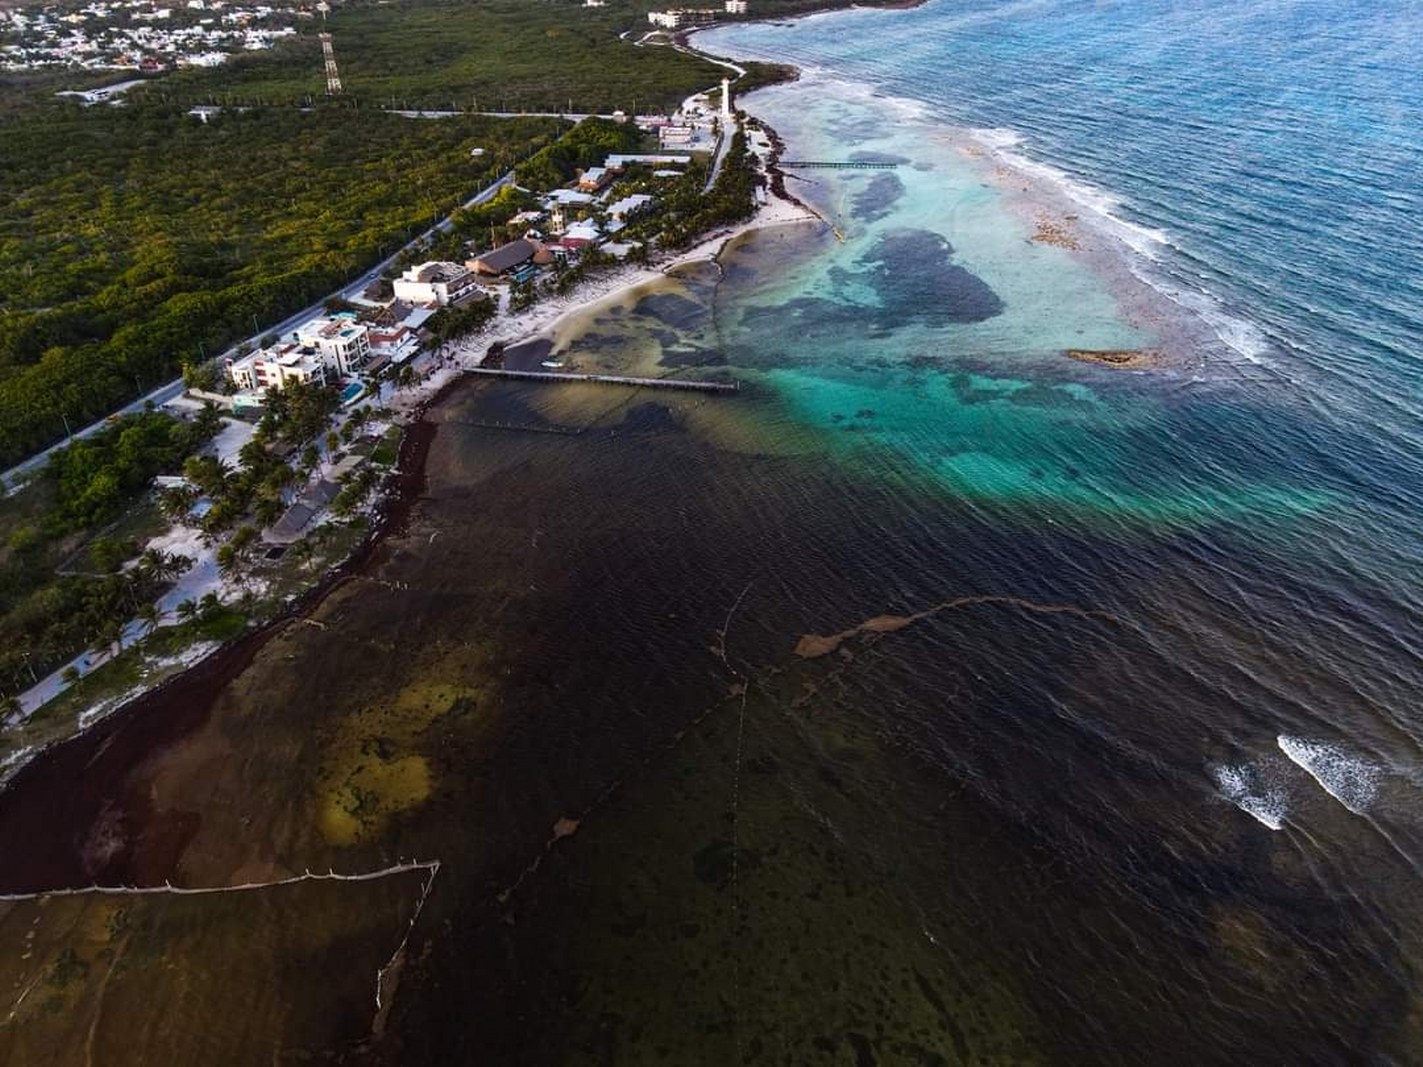 Surada causa acumulación de sargazo en playas de Mahahual, al Sur de Quintana Roo